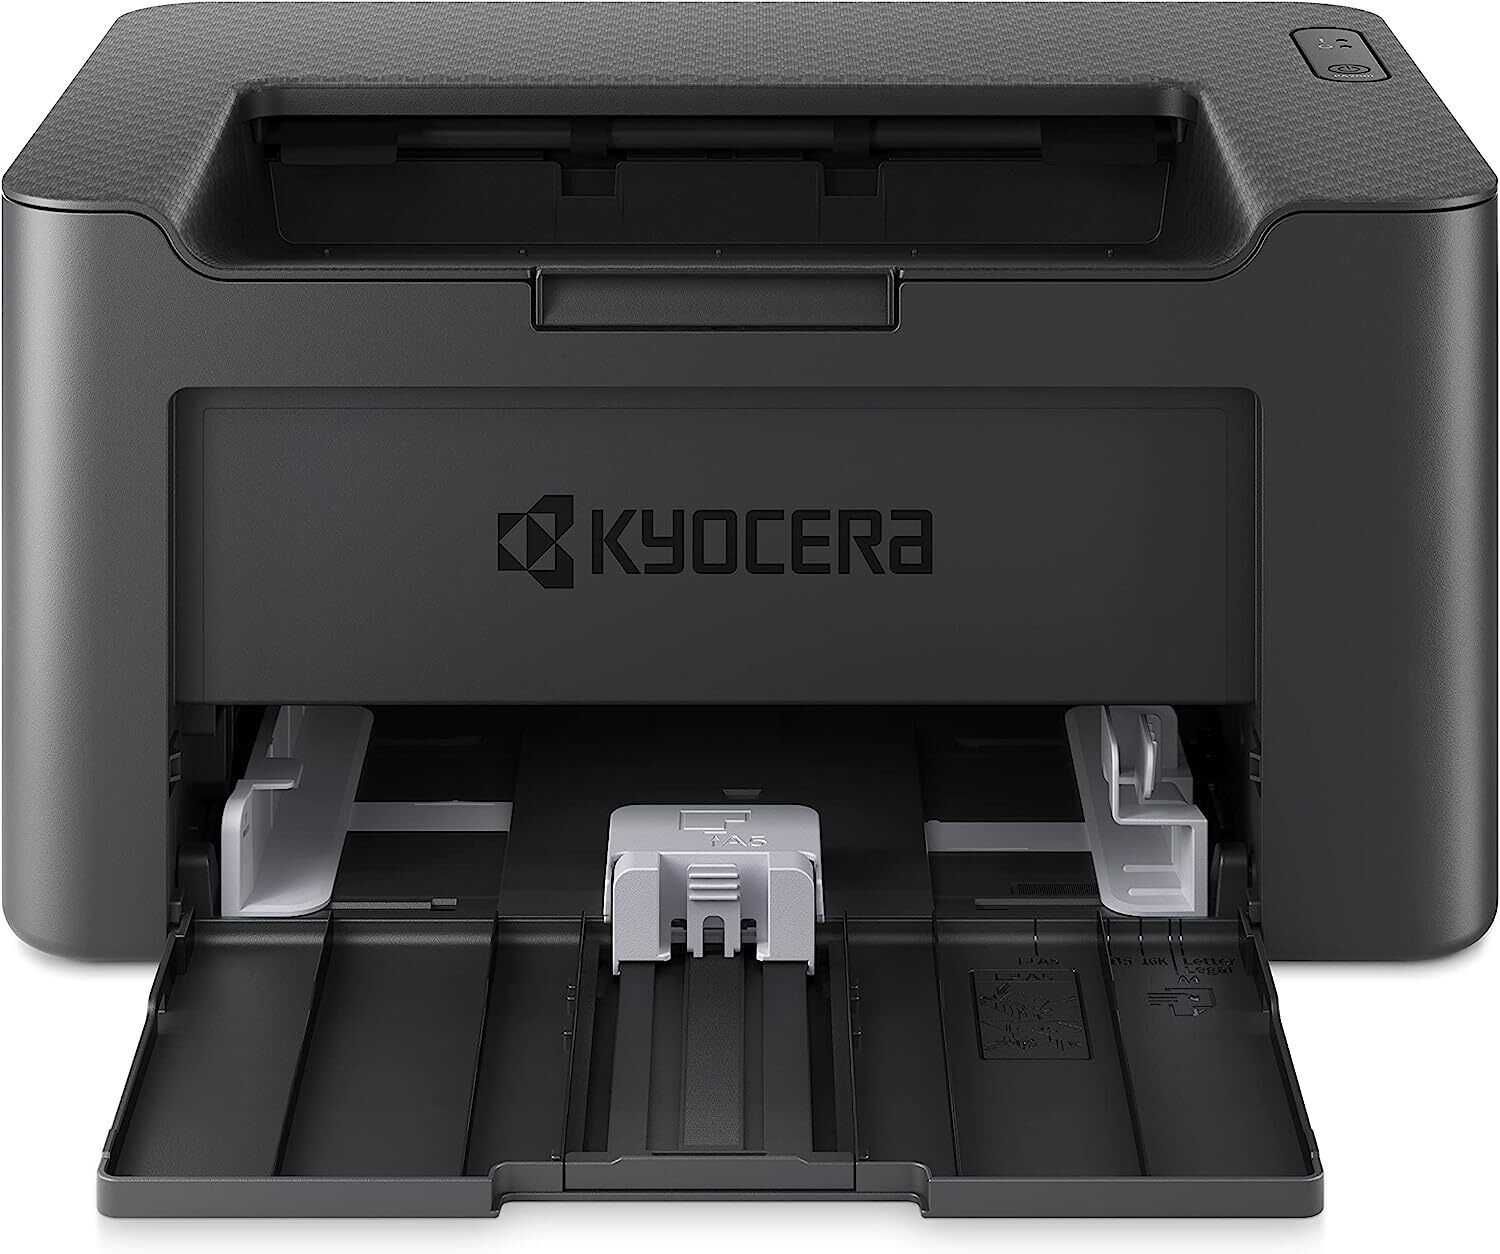 Принтер Kyocera Ecosys PA2001w роздруковано 35 сторінок.